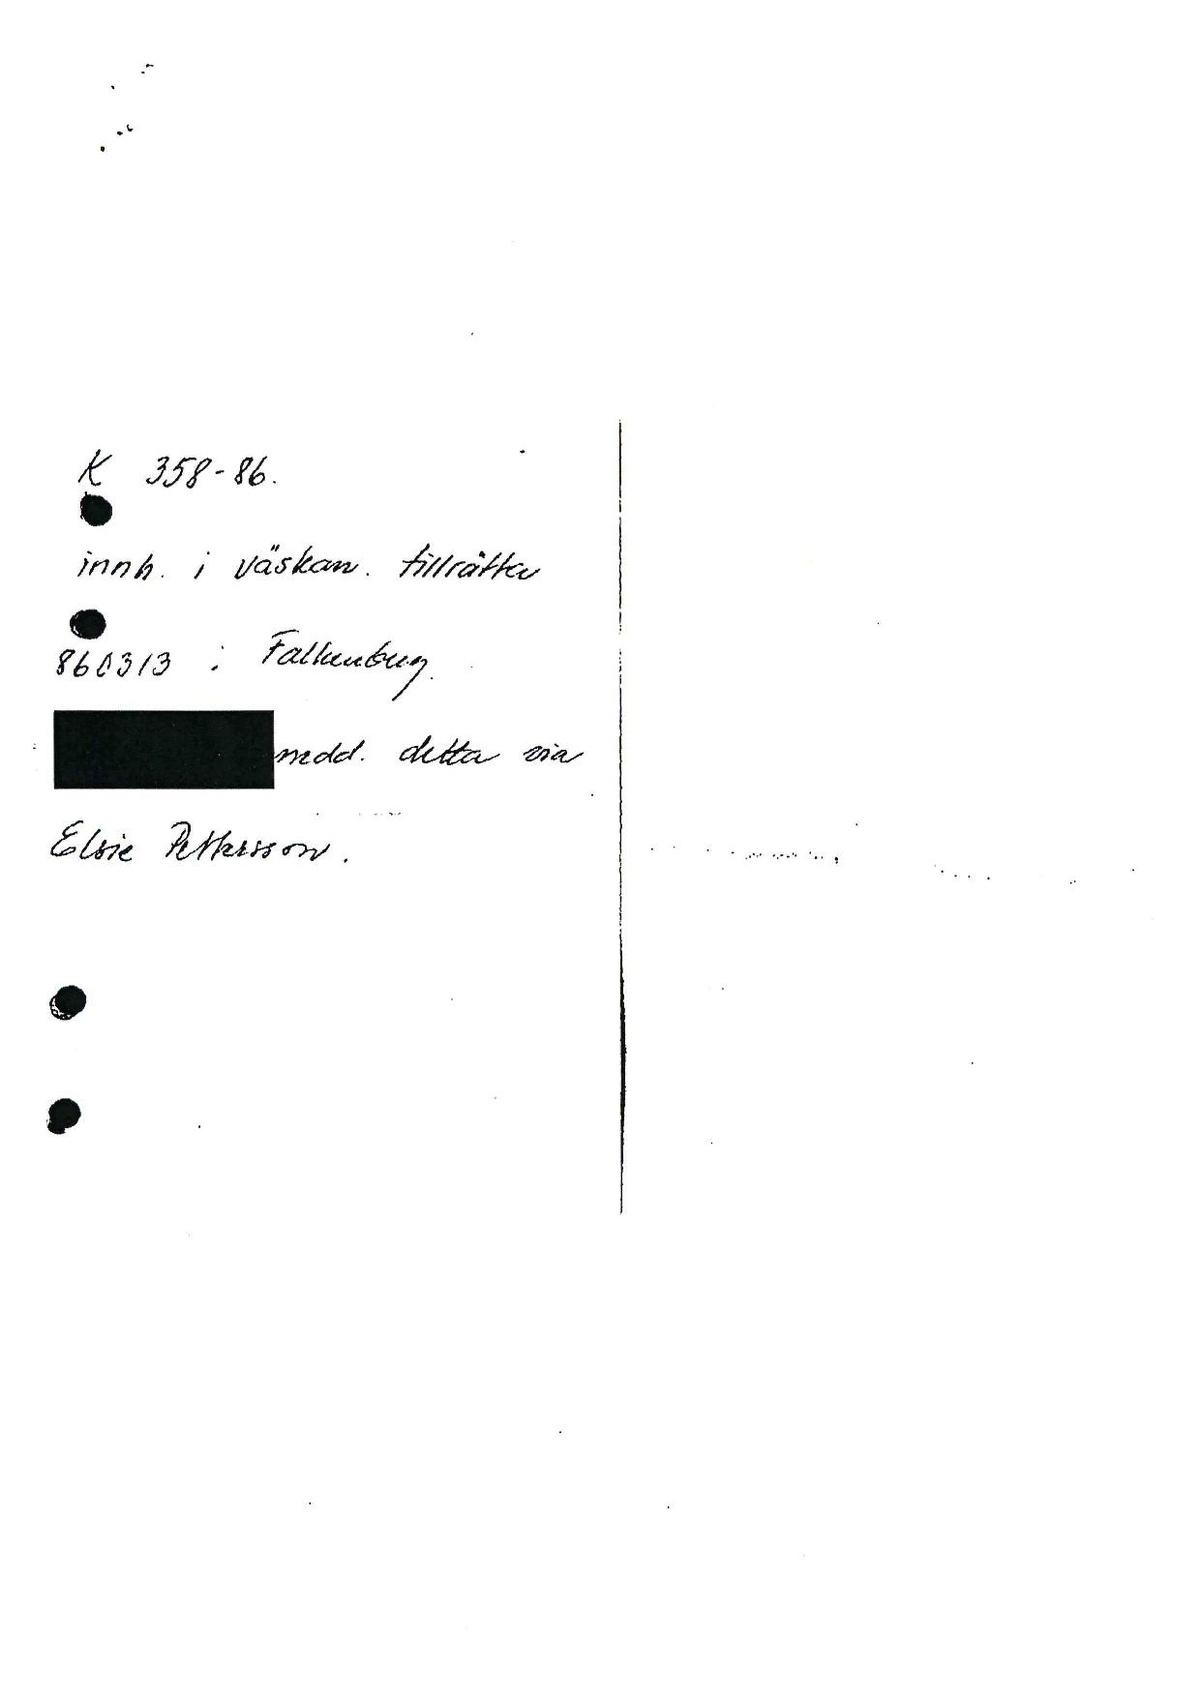 Pol-1986-03-08 D1719-00 Man försvunnen från hotelldel 2.pdf